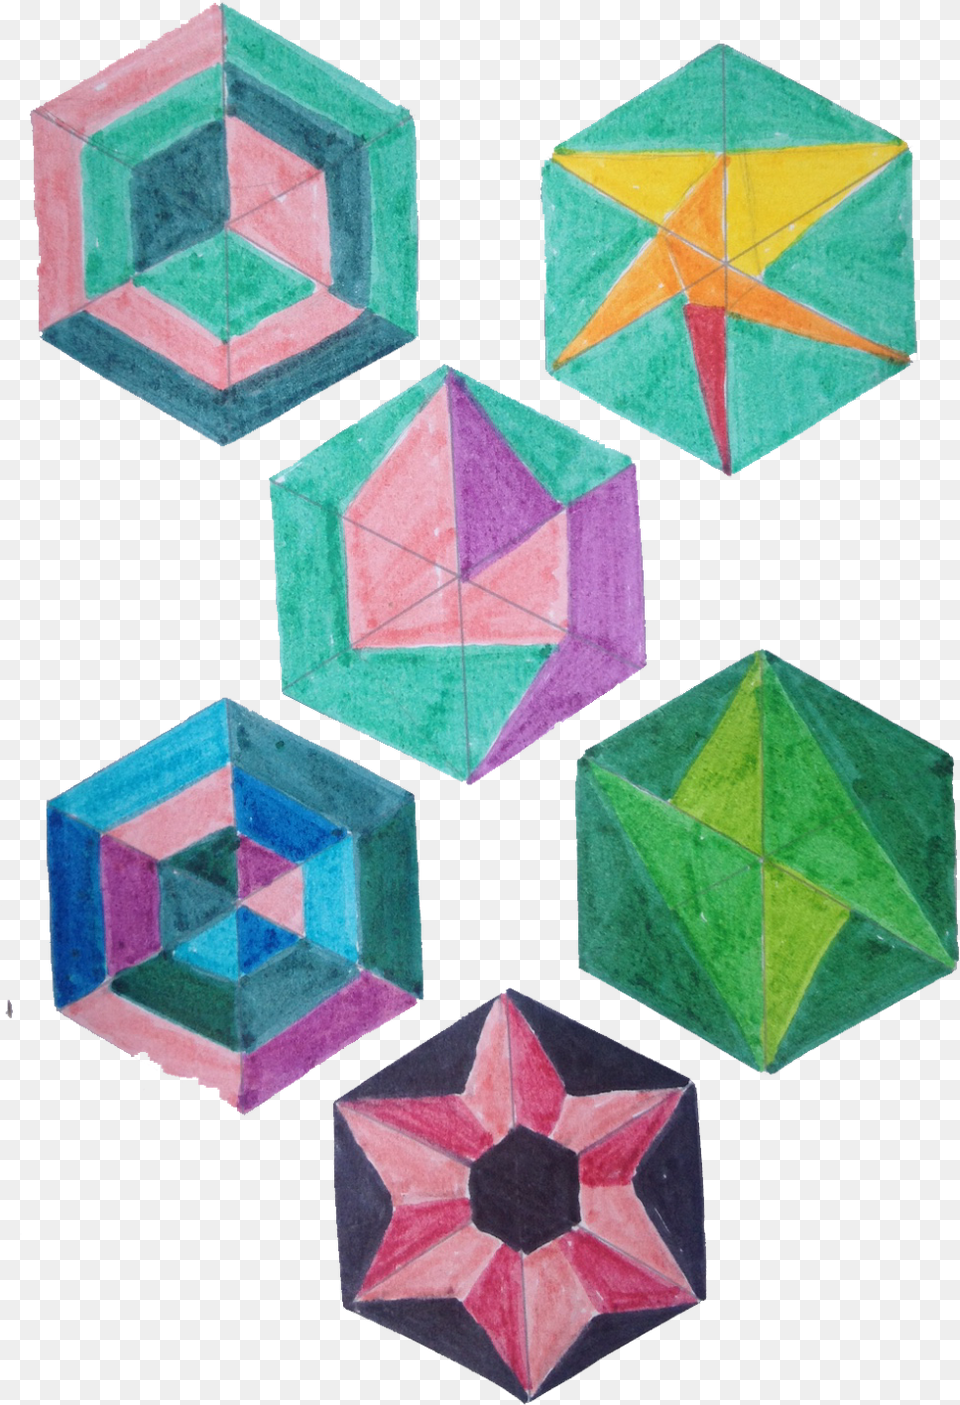 Bocetos En Blanco Y Negro Tcnica De Color Y Bolgrafo Triangle, Paper, Art, Box, Origami Free Transparent Png